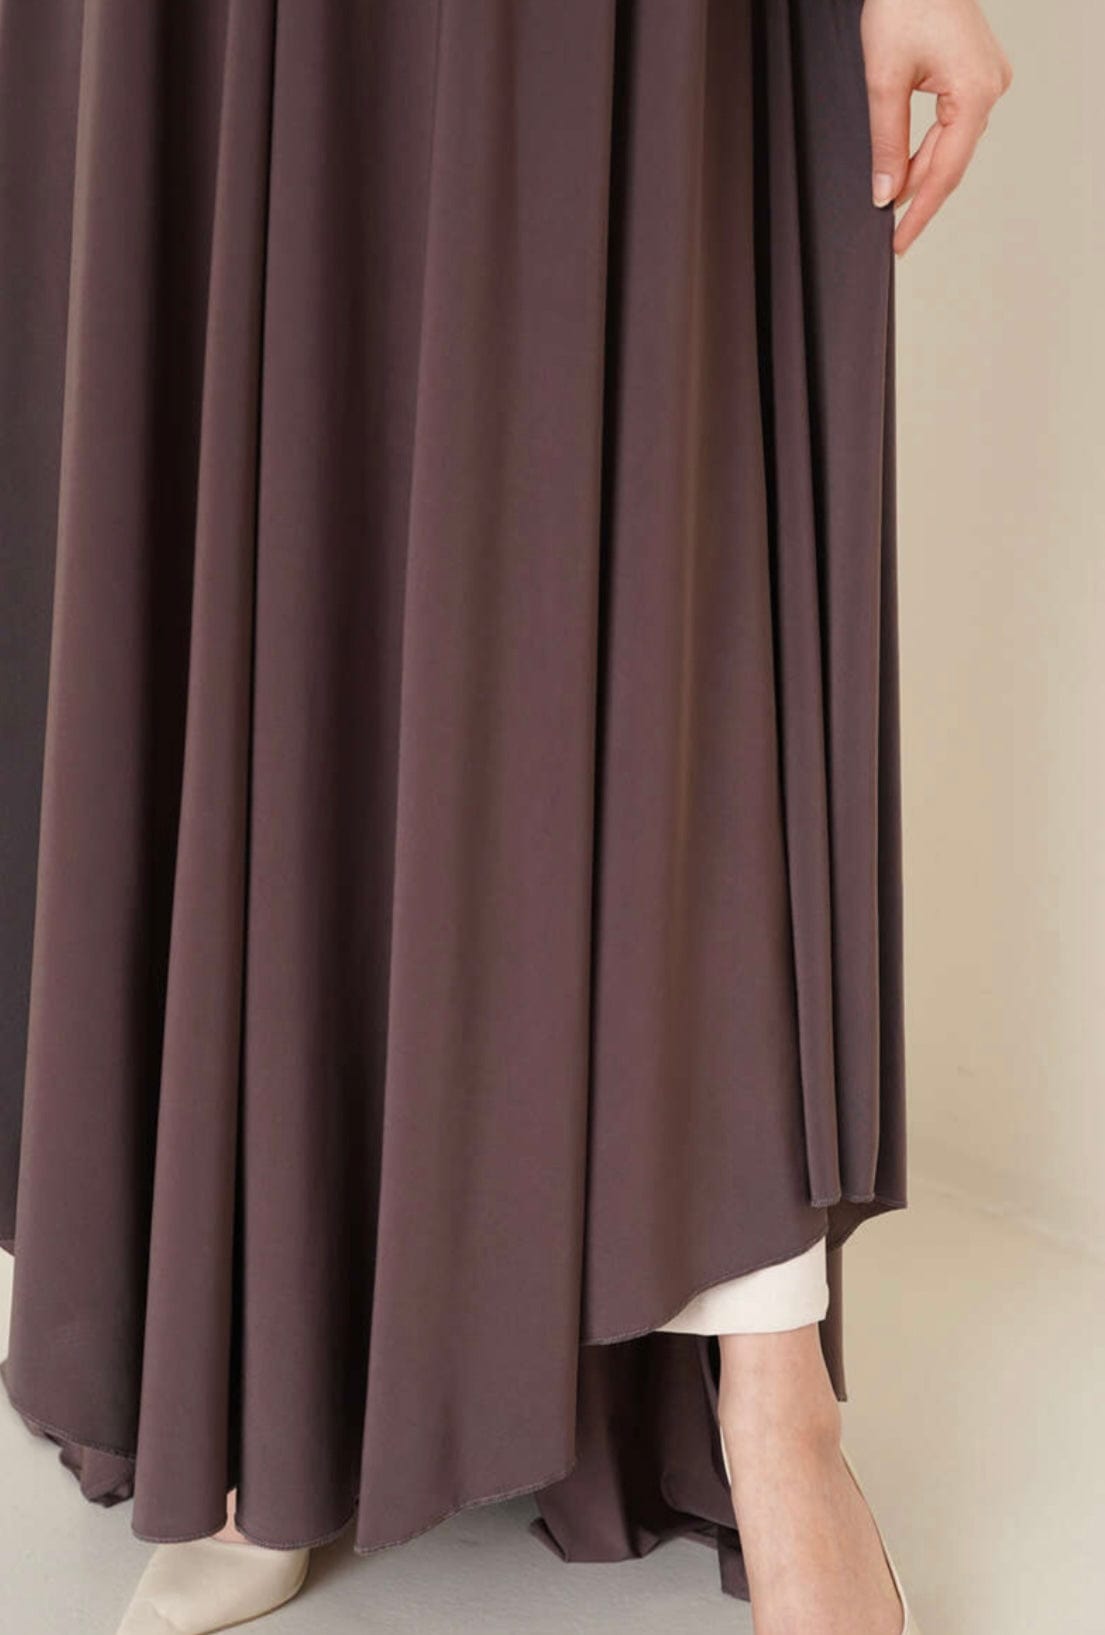 Deen Souvenir Abaya Premium Jersey in Braun Abaya Premium Jersey in Braun - Ein Must-Have für modebewusste Frauen